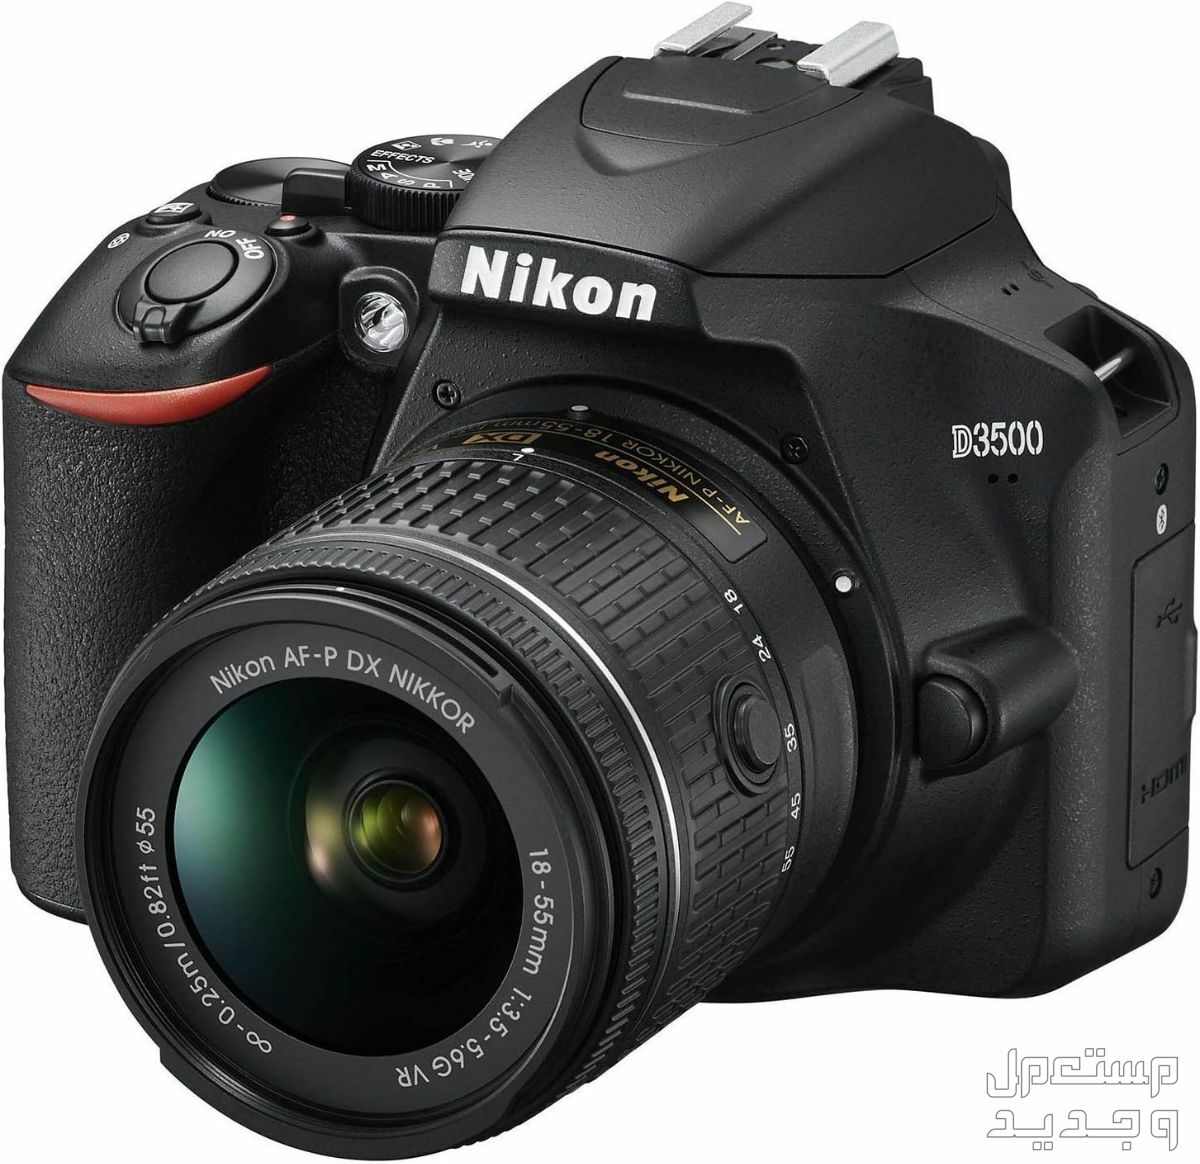 10 كاميرات تصوير ماركات عالمية بأسعار رخيصة في الأردن مميزات كاميرا Nikon D3500